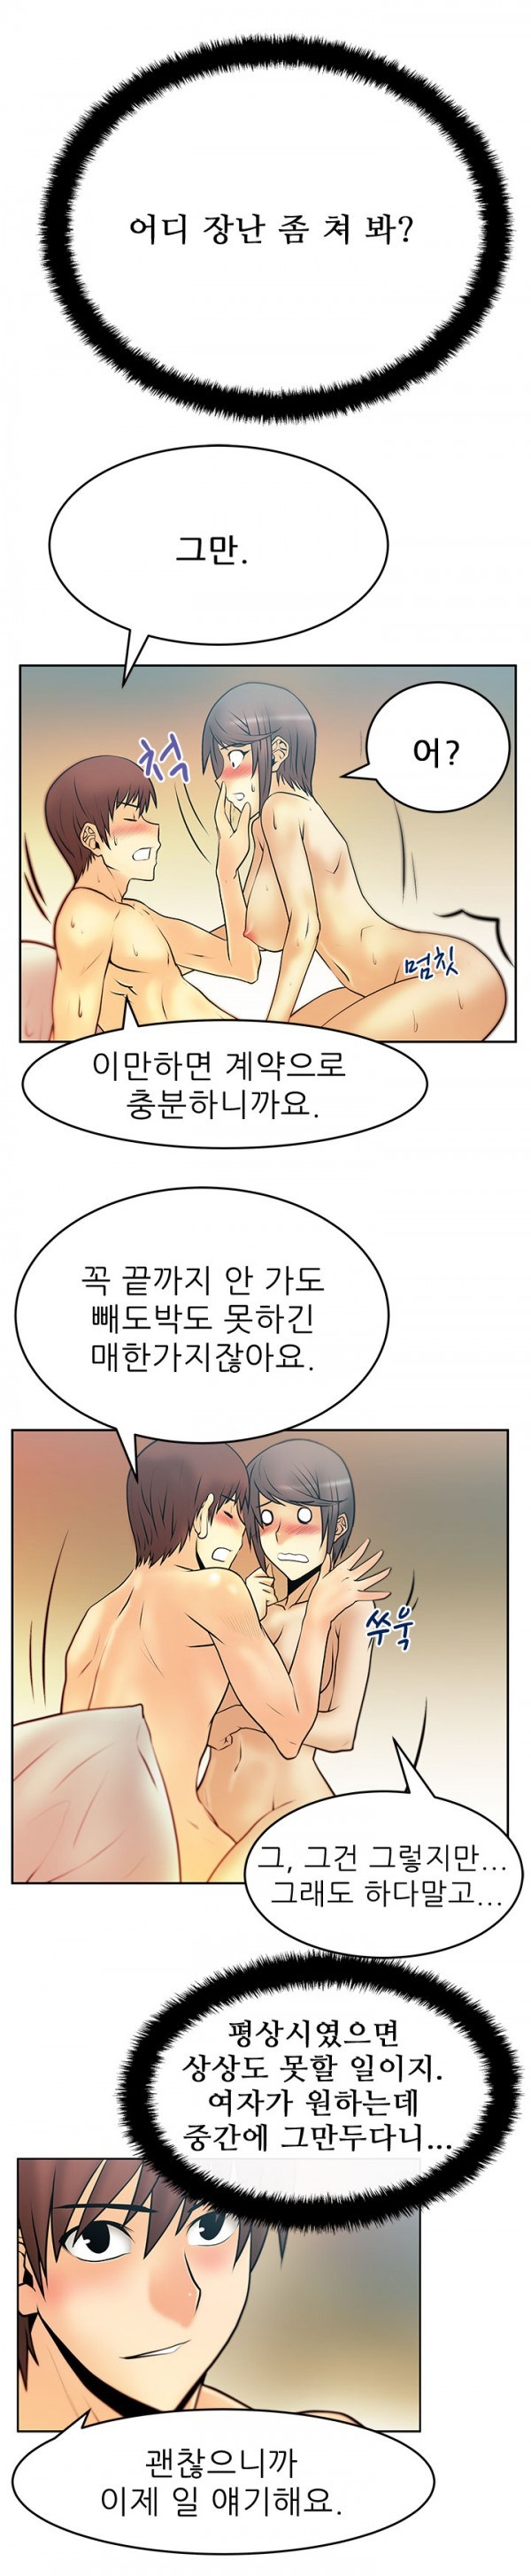 [Minu Mindu] Office Lady Vol. 1 [Korean] 225